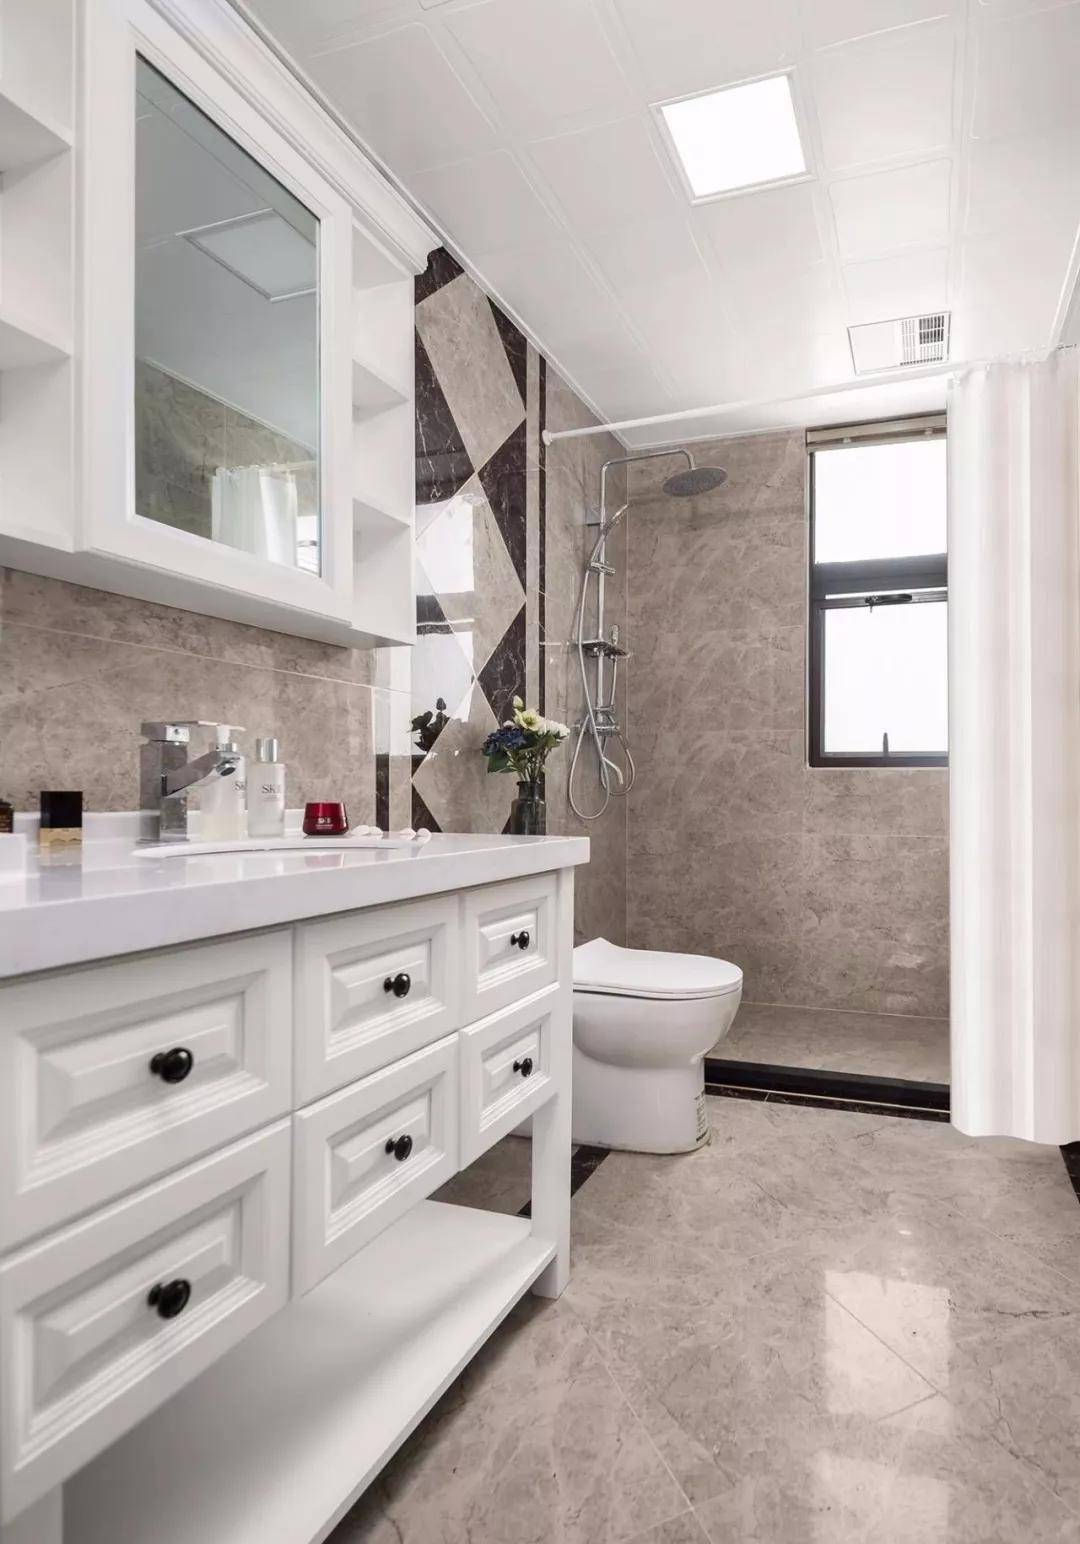 卫生间整体通铺现代感的咖啡色瓷砖,搭配白色成品台盆柜与镜柜